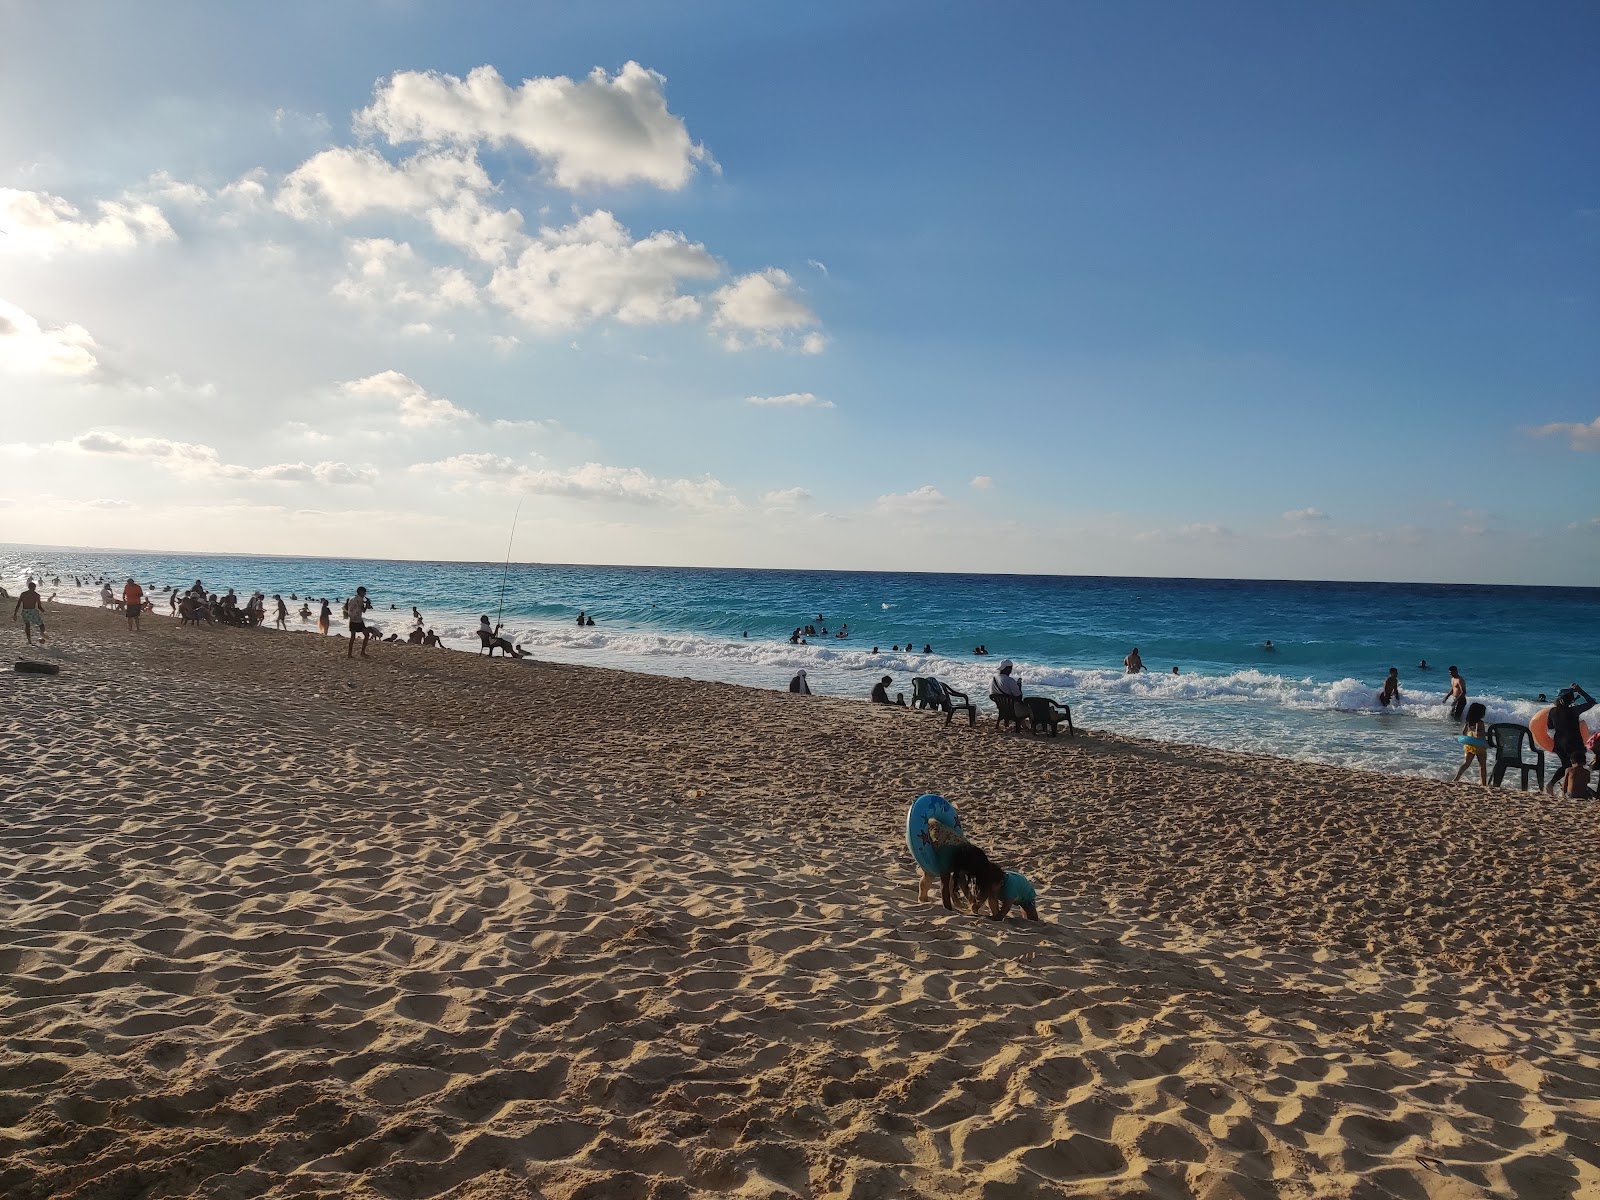 Blue Sand beach'in fotoğrafı geniş plaj ile birlikte